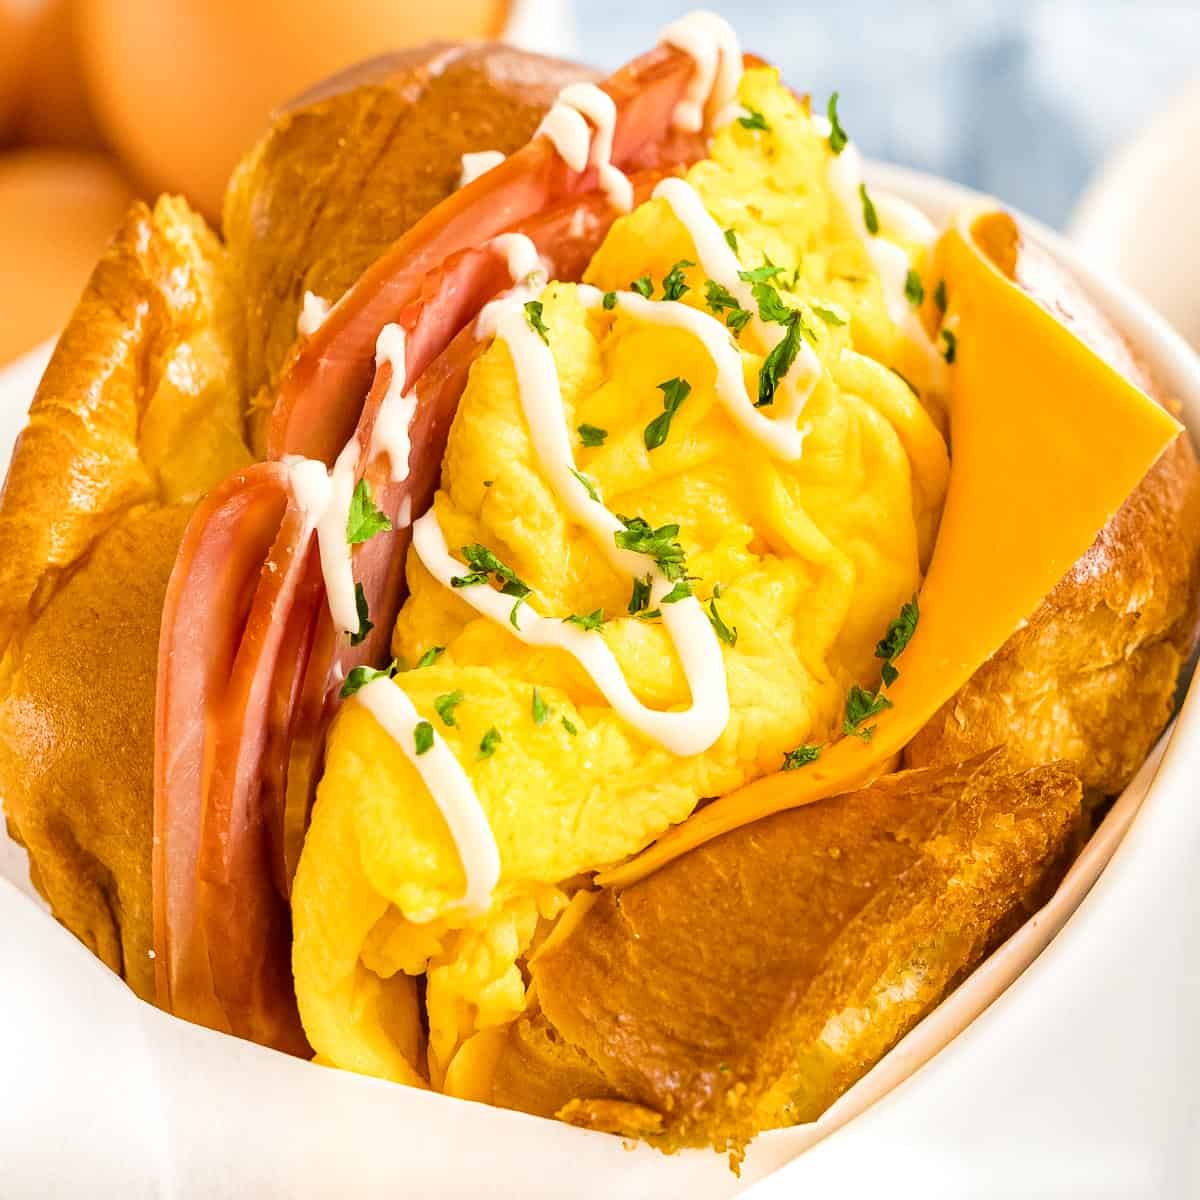 Korean Egg Drop Sandwich - Breakfast Egg Sandwich - Drive Me Hungry